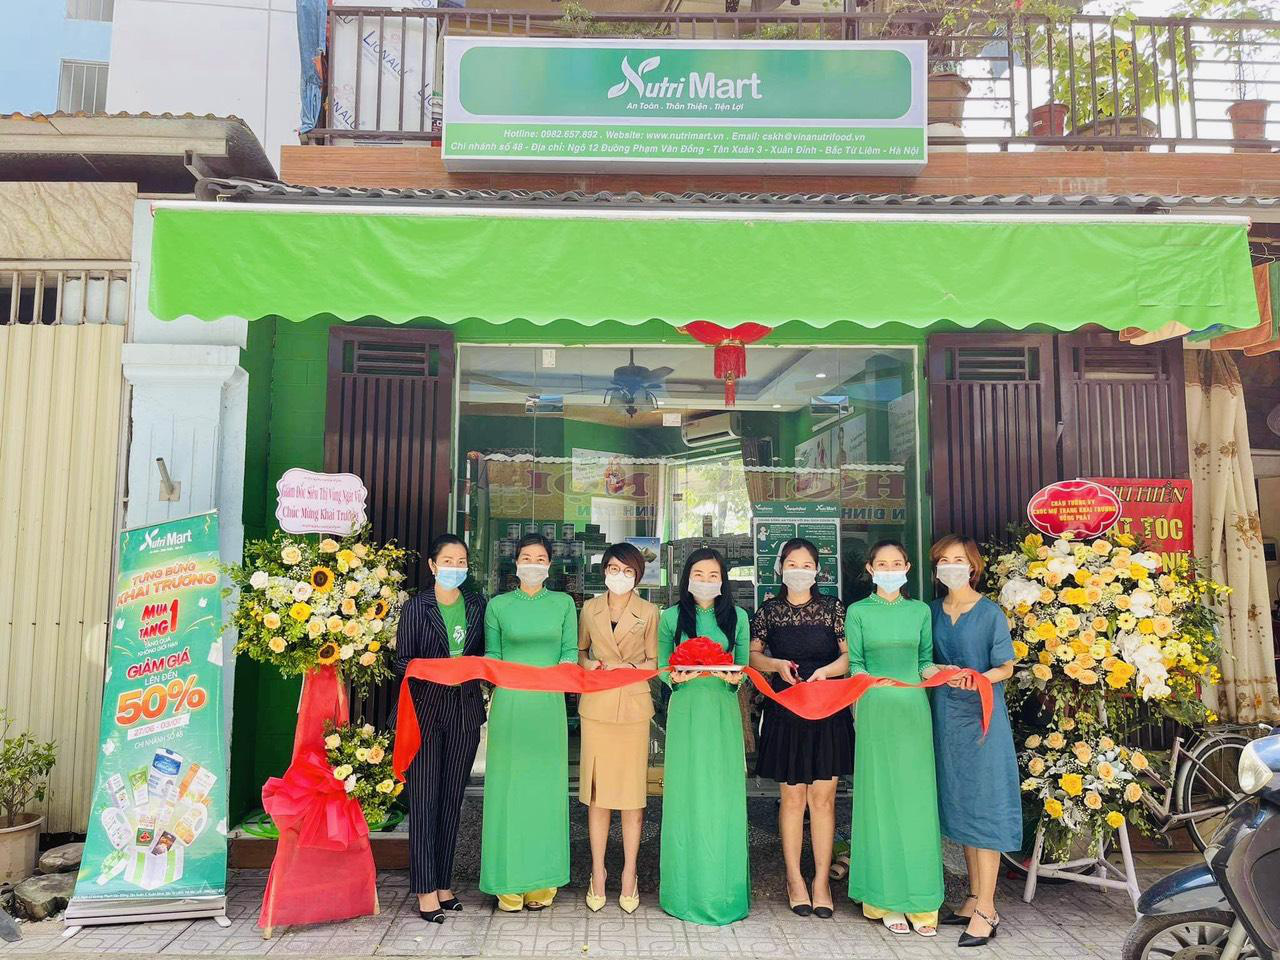 Hàng trăm sản phẩm từ nông sản Việt tại Nutri Mart chinh phục thị trường nội địa - Ảnh 2.